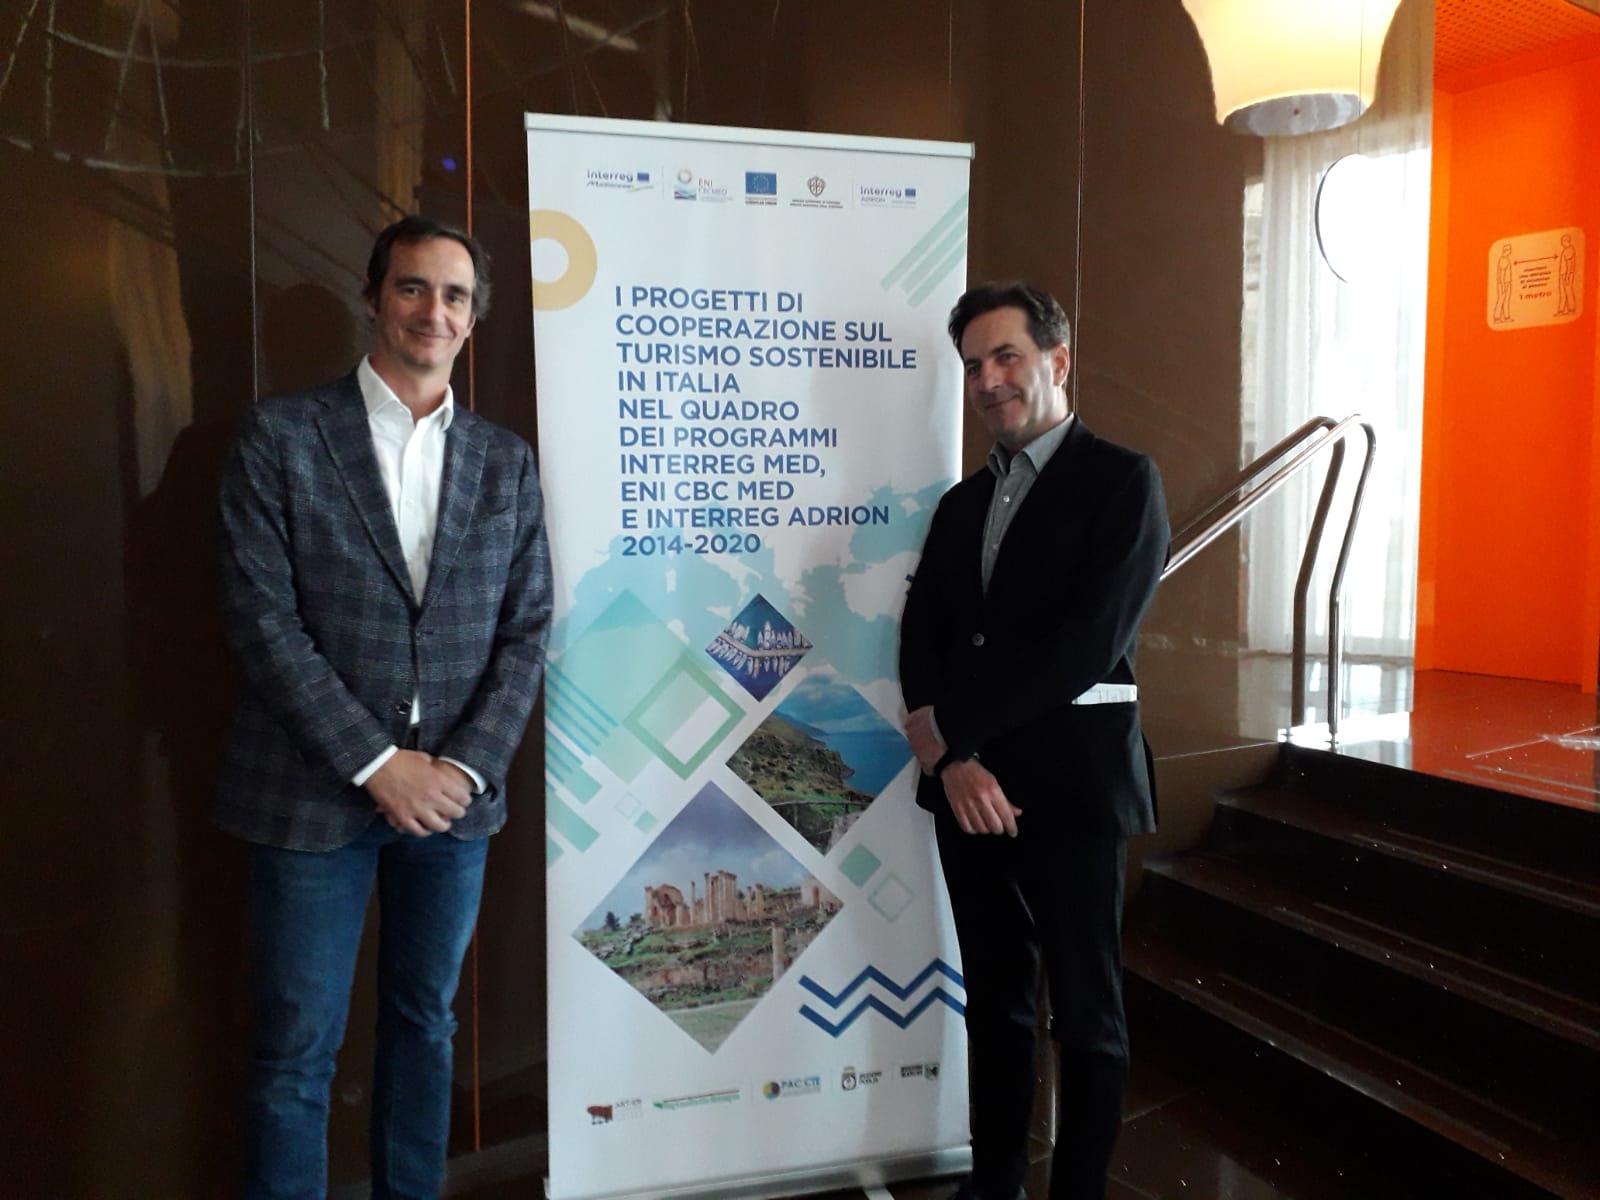 Gallery Bari, 30 marzo 2023 – Evento “Presentazione del Rapporto di Valutazione dei progetti di cooperazione sul Turismo Sostenibile, nel quadro dei Programmi Interreg Euro-MED, ENI CBC Med ed Interreg ADRION 2014-2020” - Slide 13 of 14